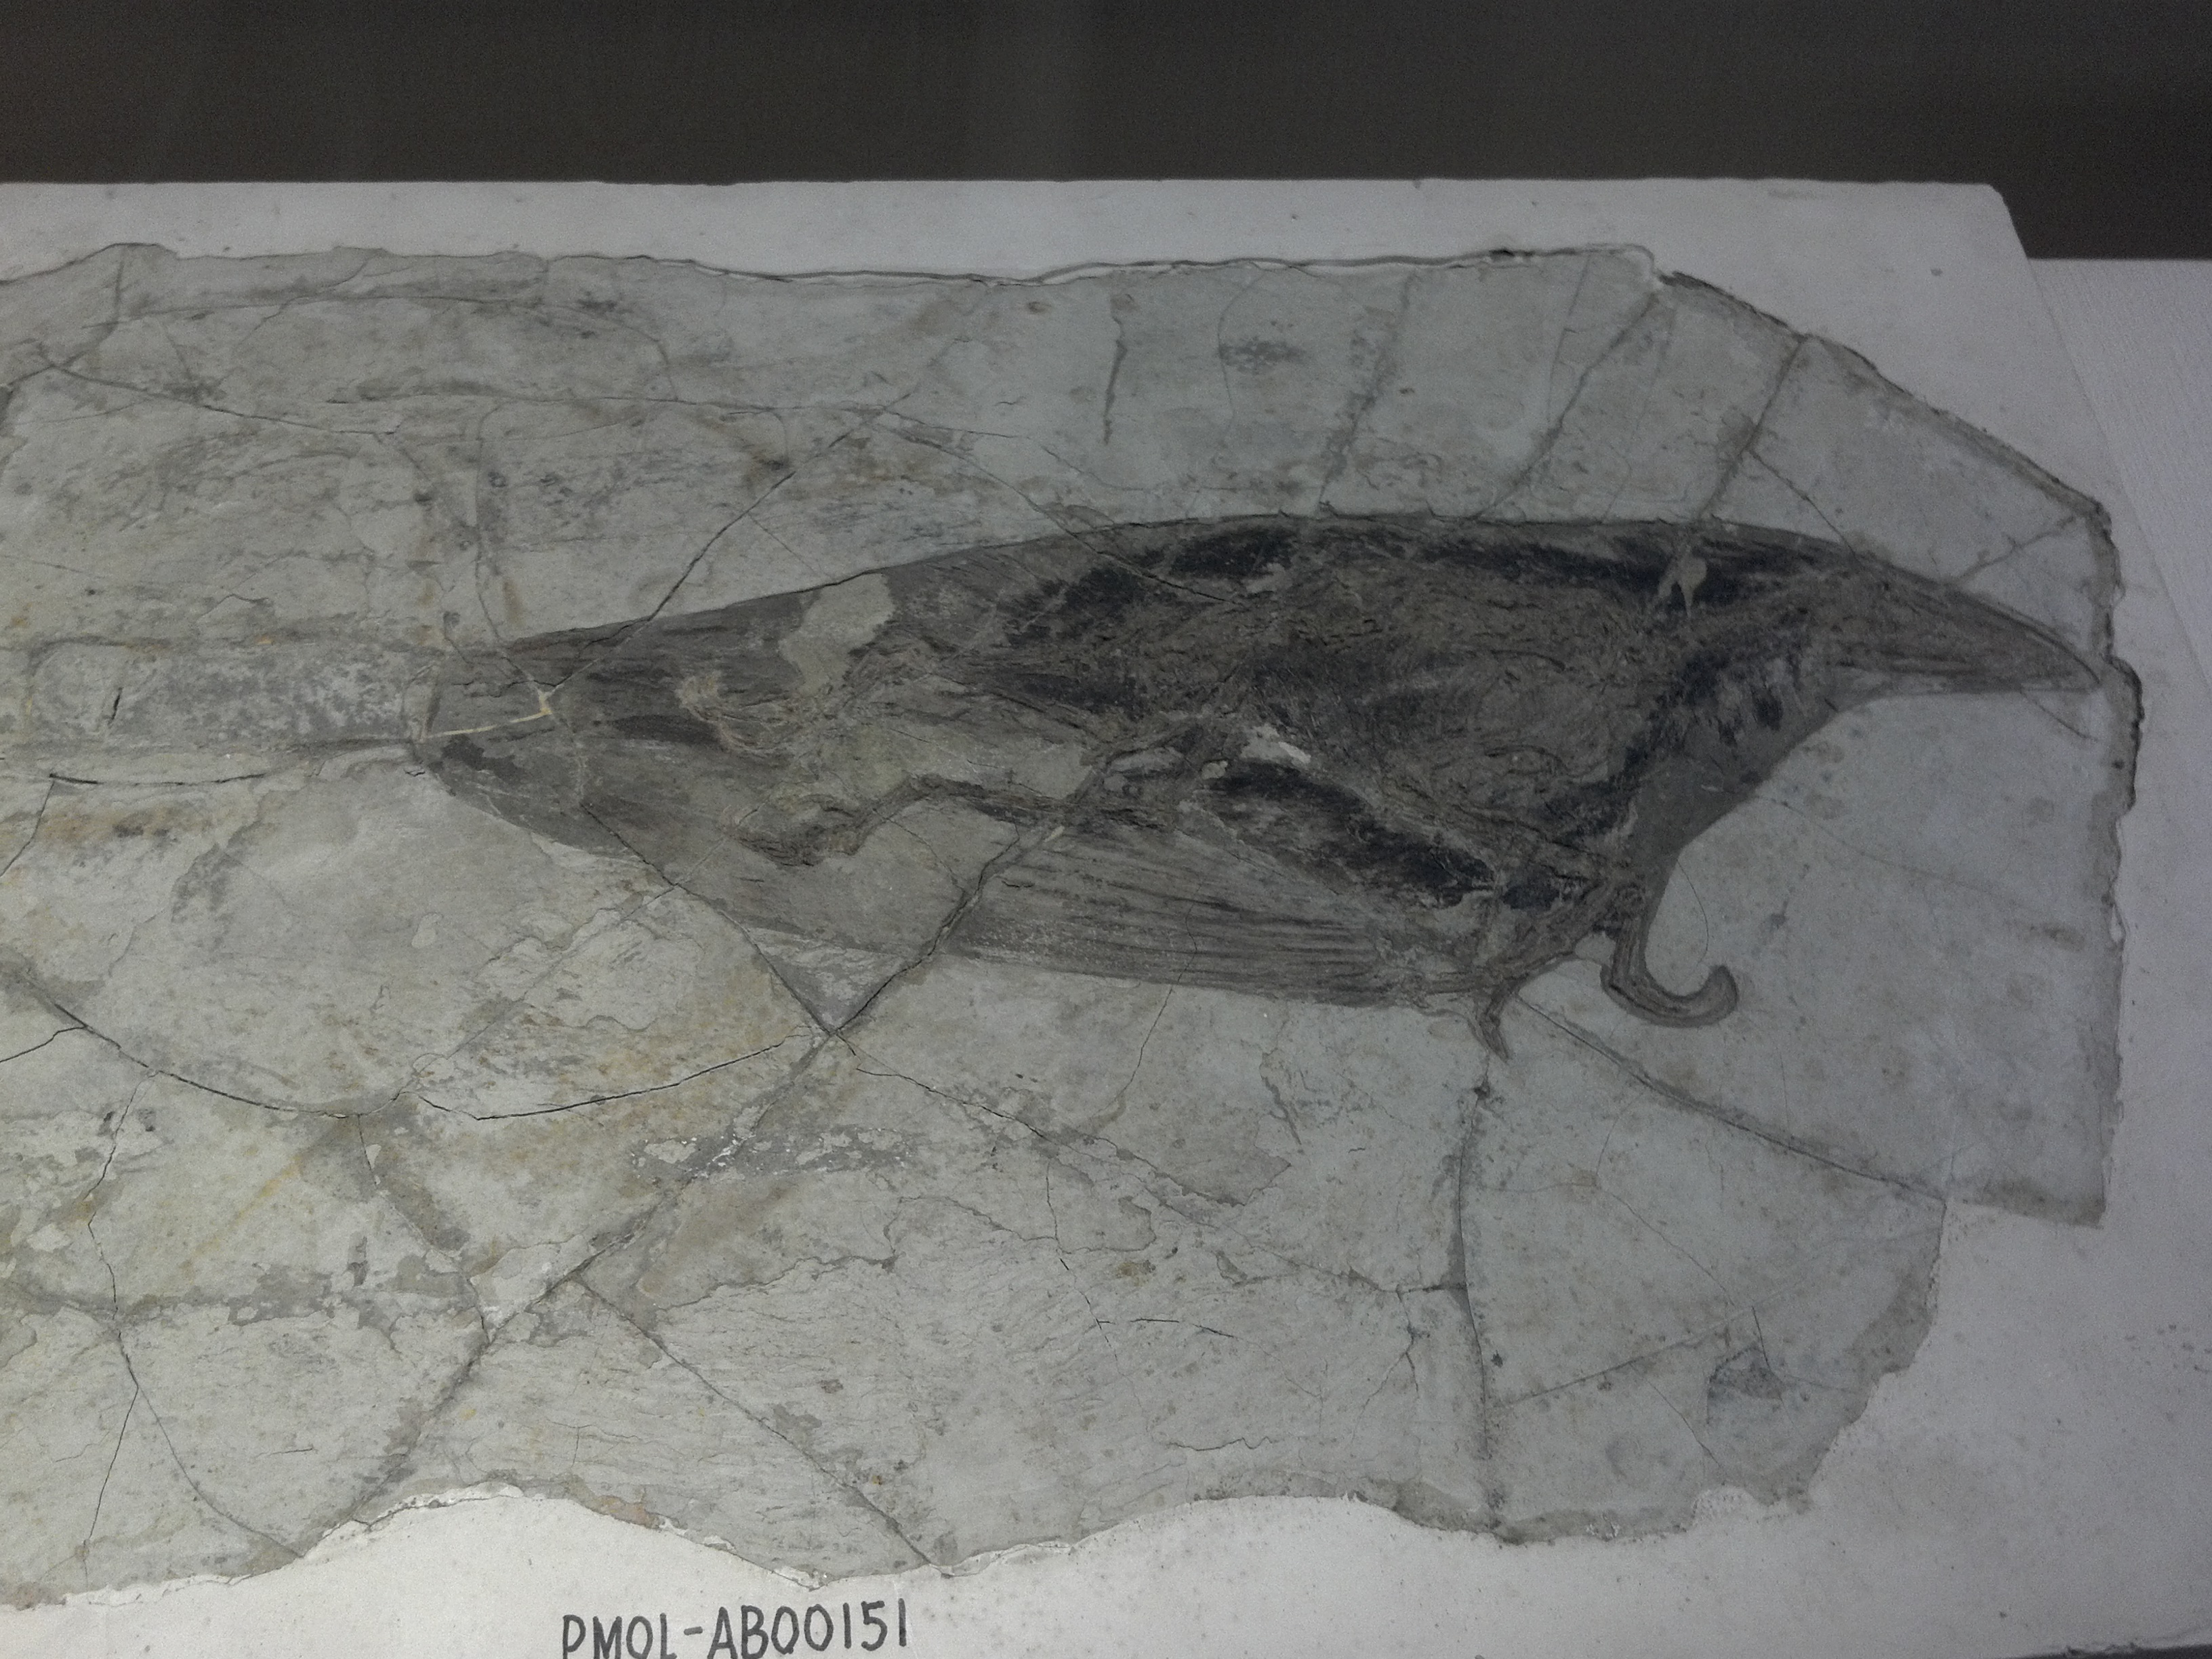 Fossiles, Paleontological Museum, Shenyang, China.